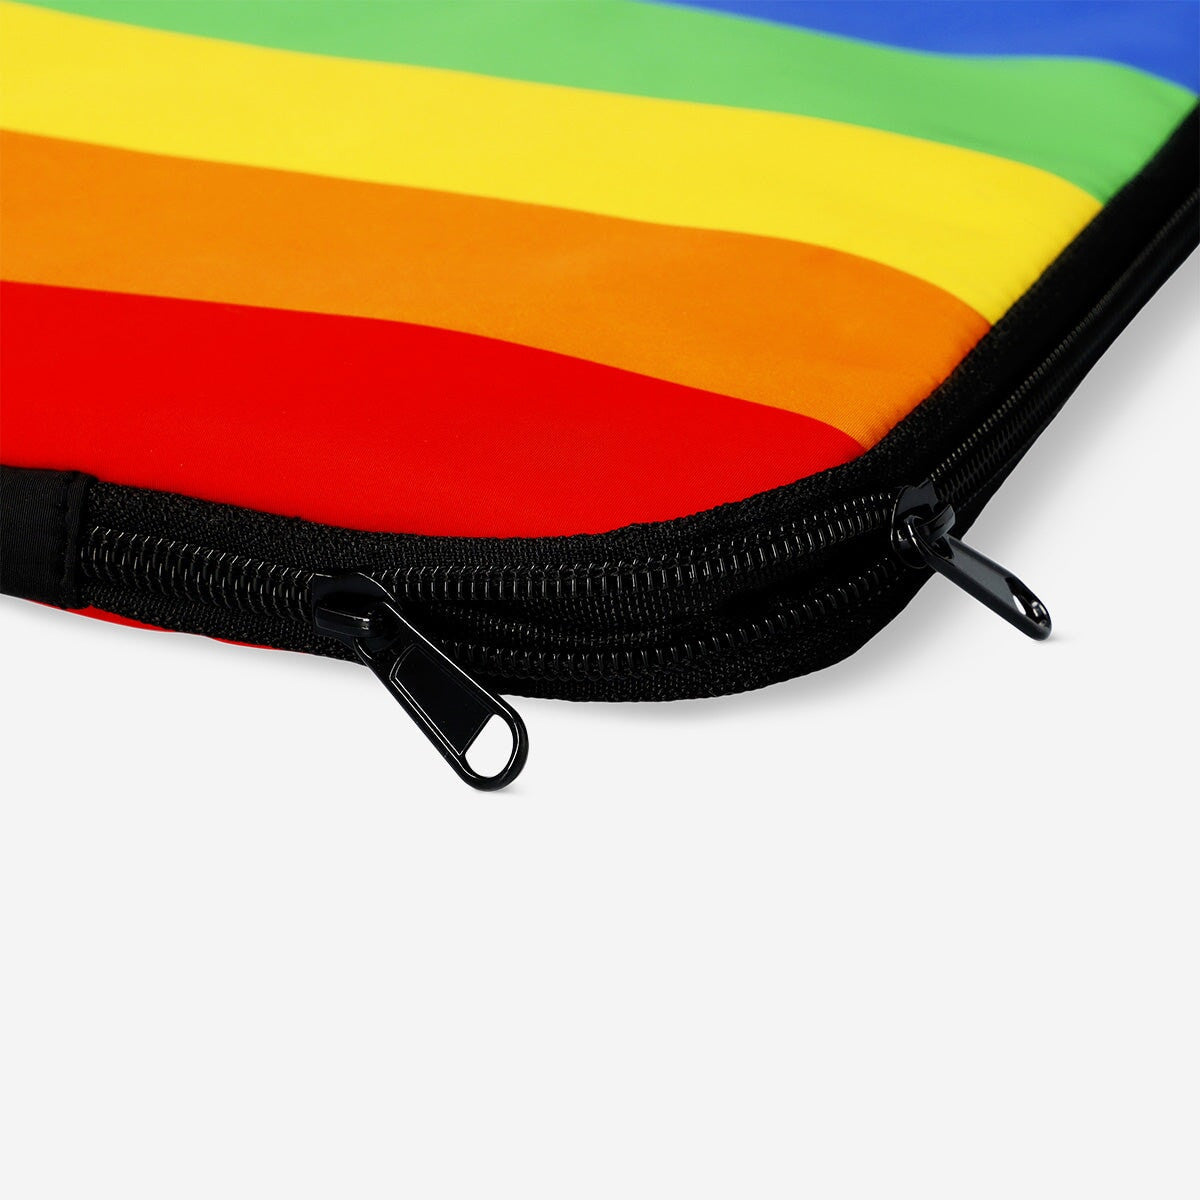 Rainbow laptop sleeve. 15-inch Media Flying Tiger Copenhagen 